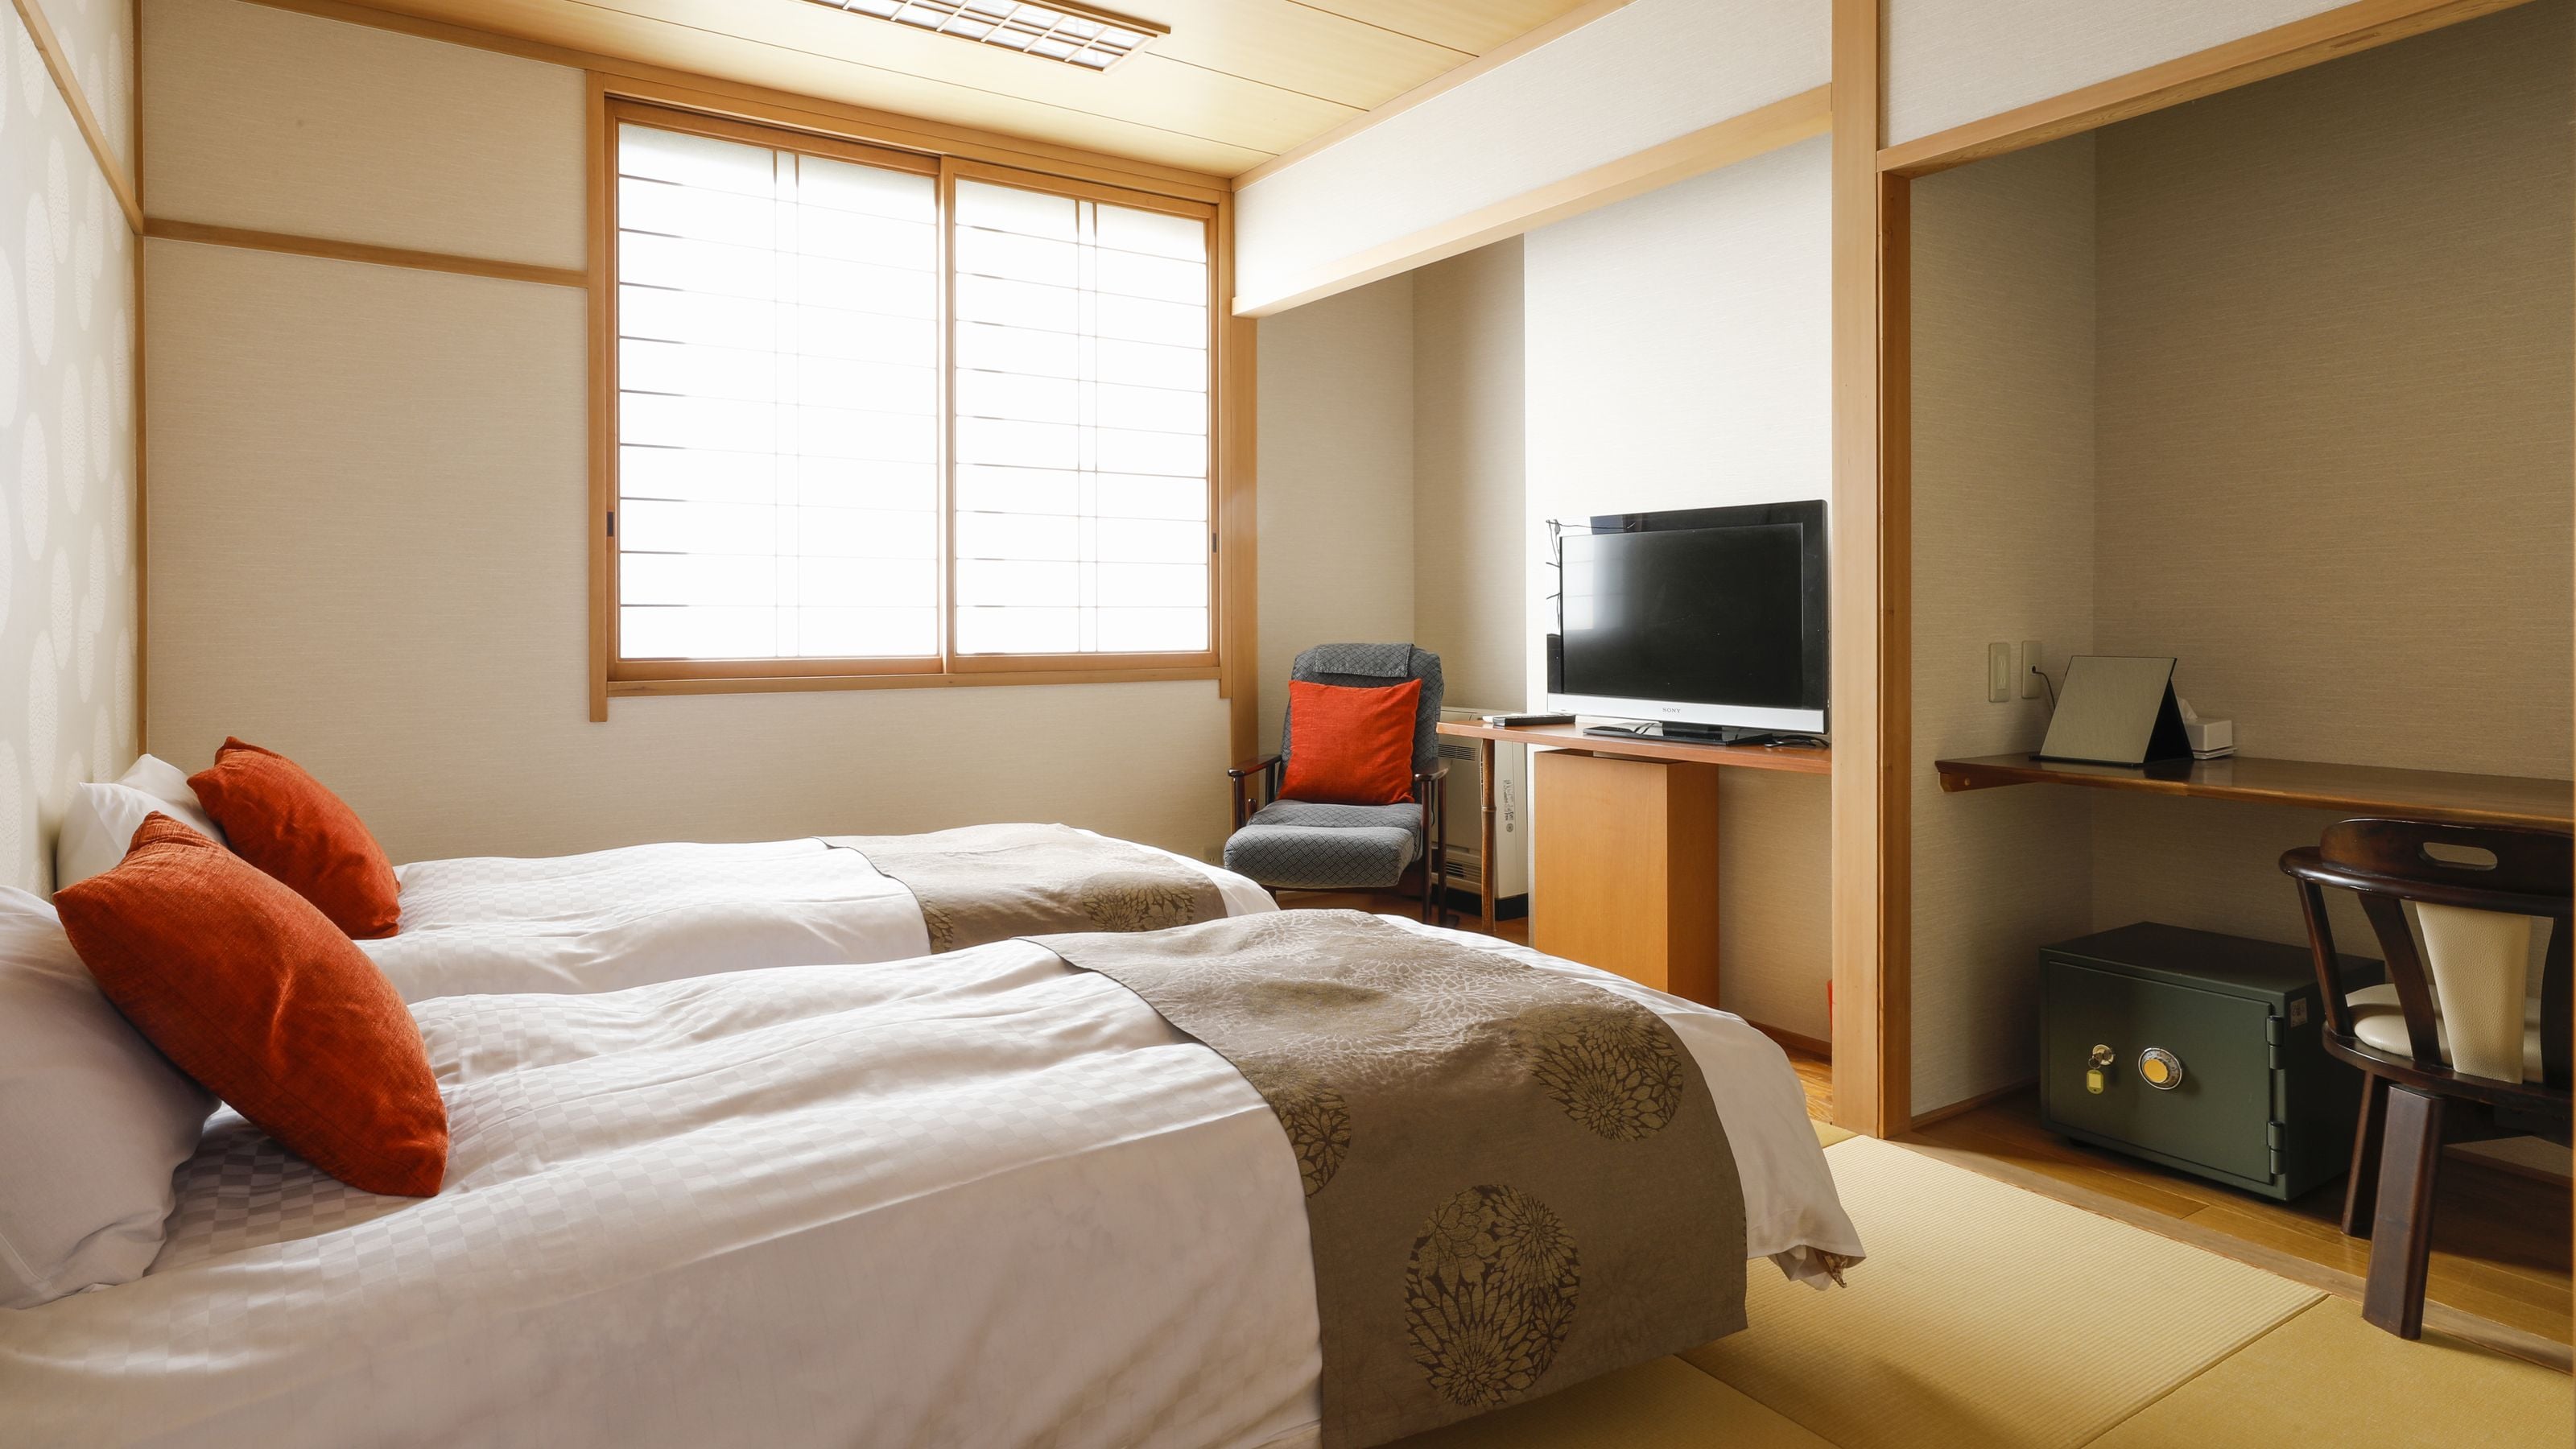 * Contoh kembar Jepang: Tempat tidur Twin Simmons tersedia. Untuk bepergian sendiri atau untuk bisnis